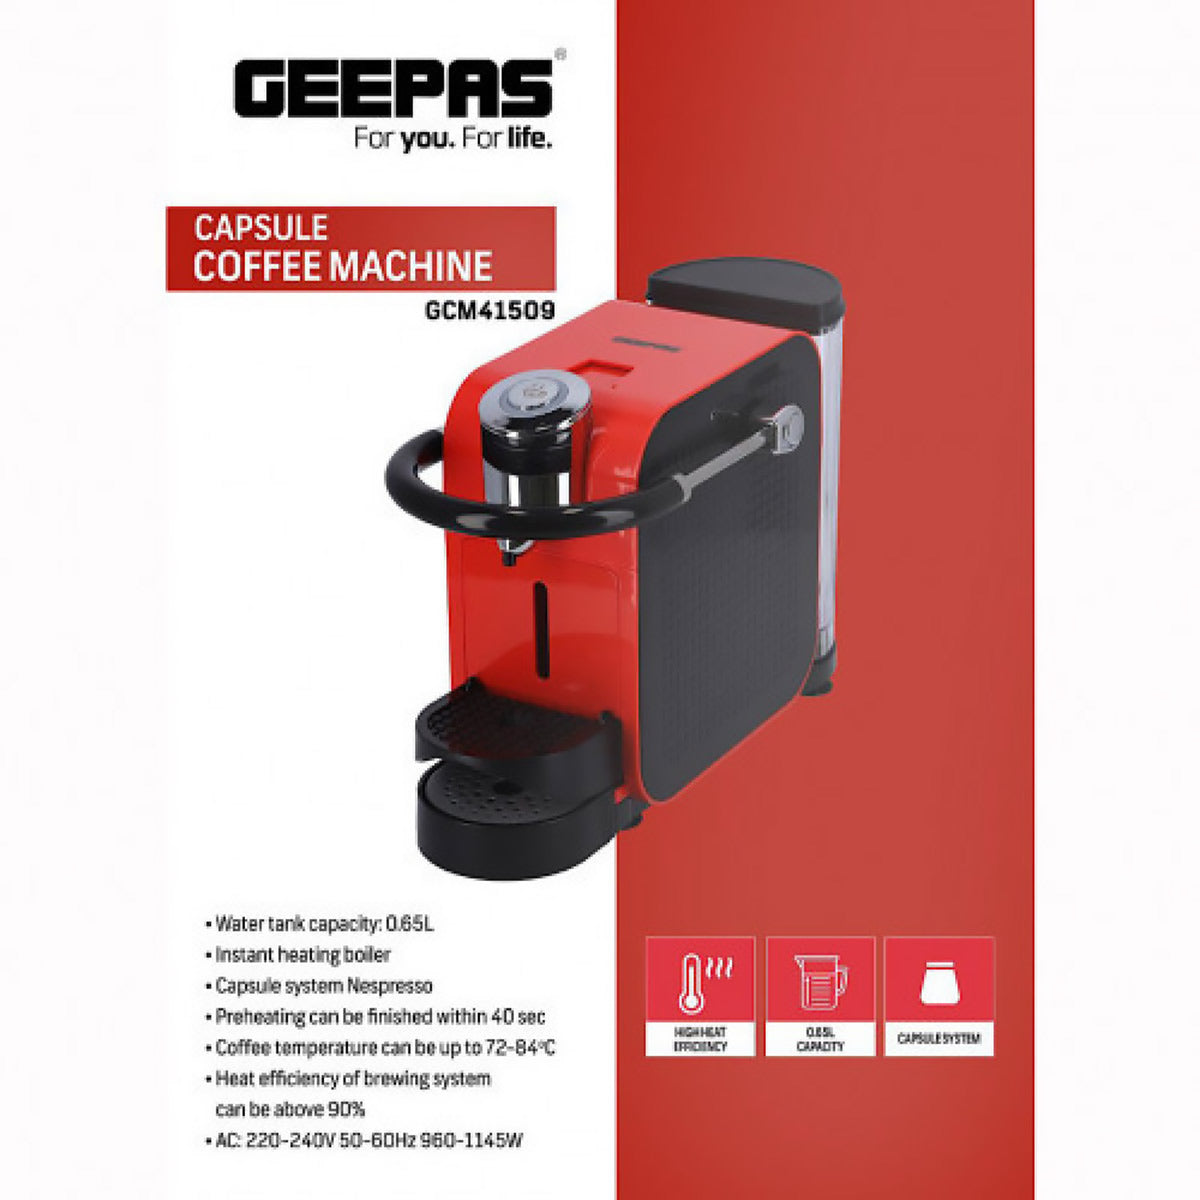 Geepas Capsule Coffee Maker 0.65L WaterTank 1x2